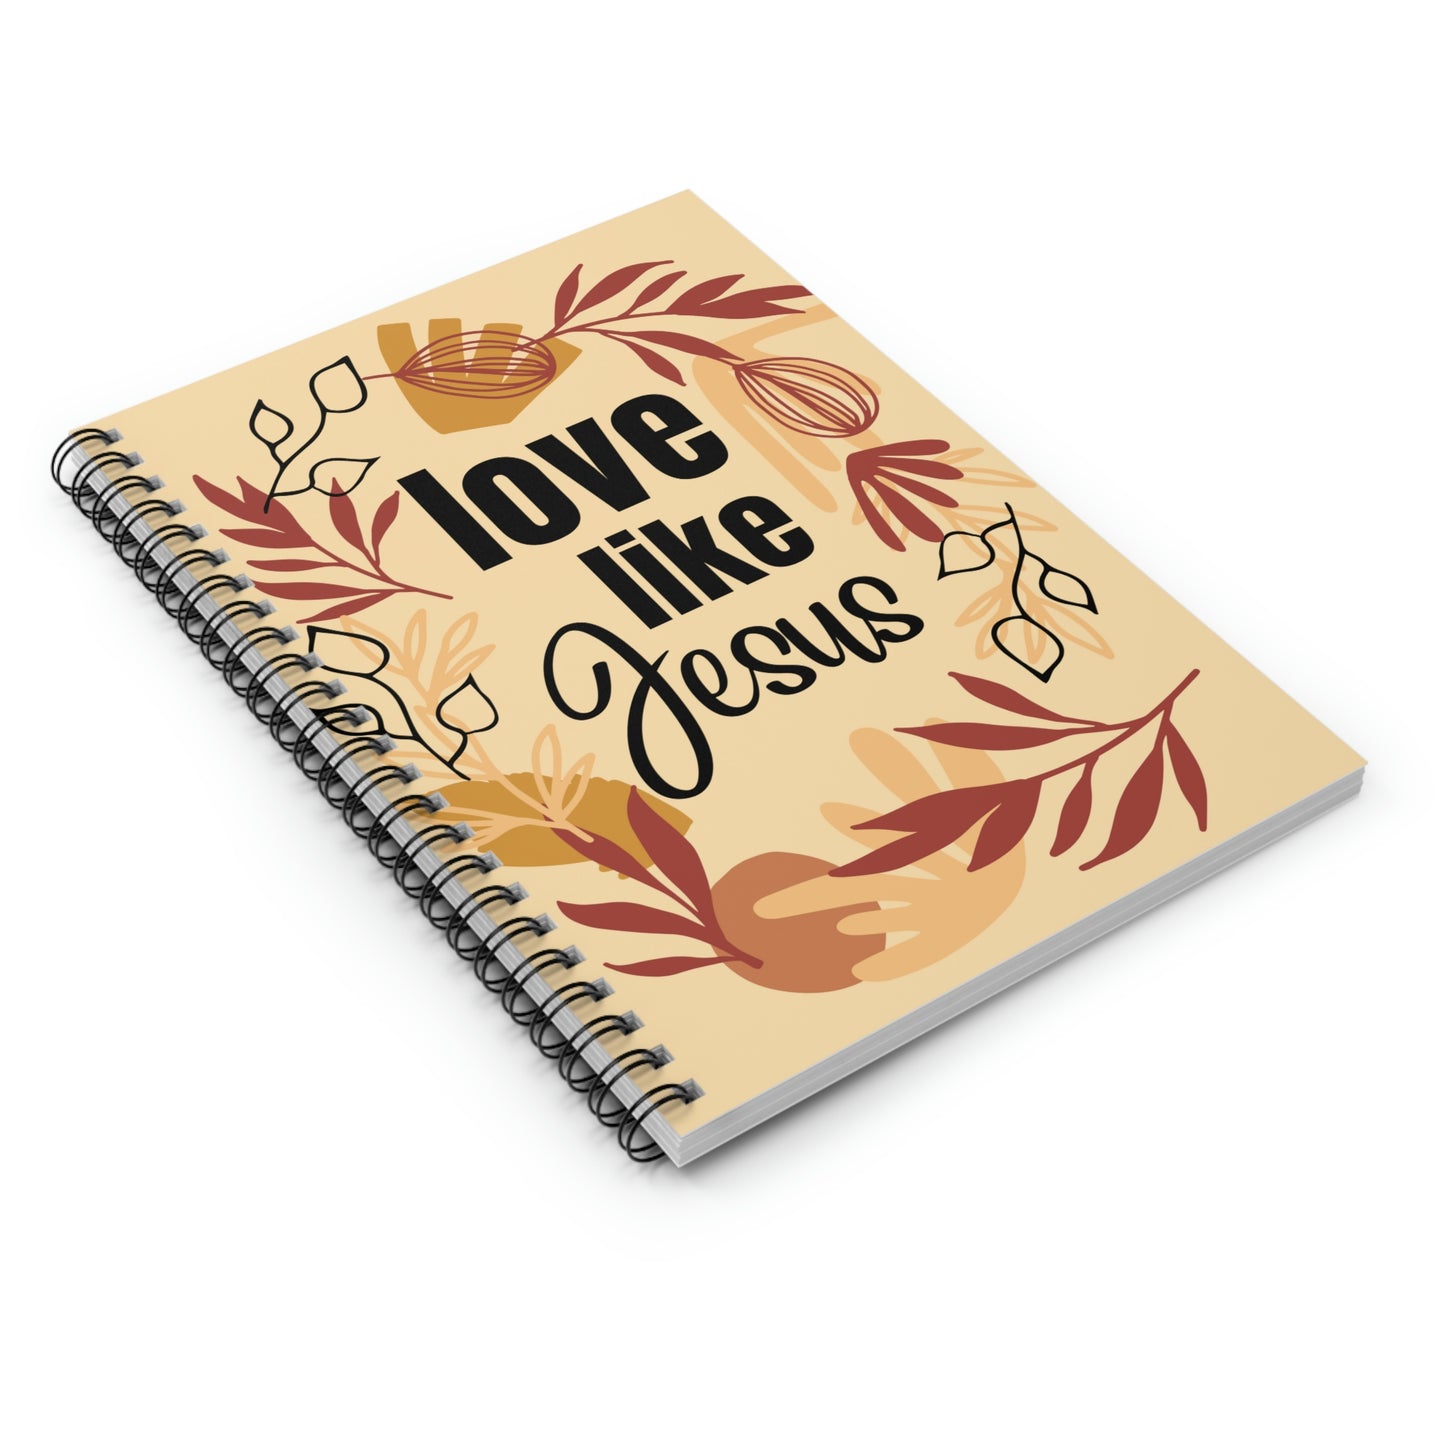 Christian Notebook, Bible Journal, Prayer Journal, Love Like Jesus, Christian Merch Blank Spiral Notebook - Ruled Line